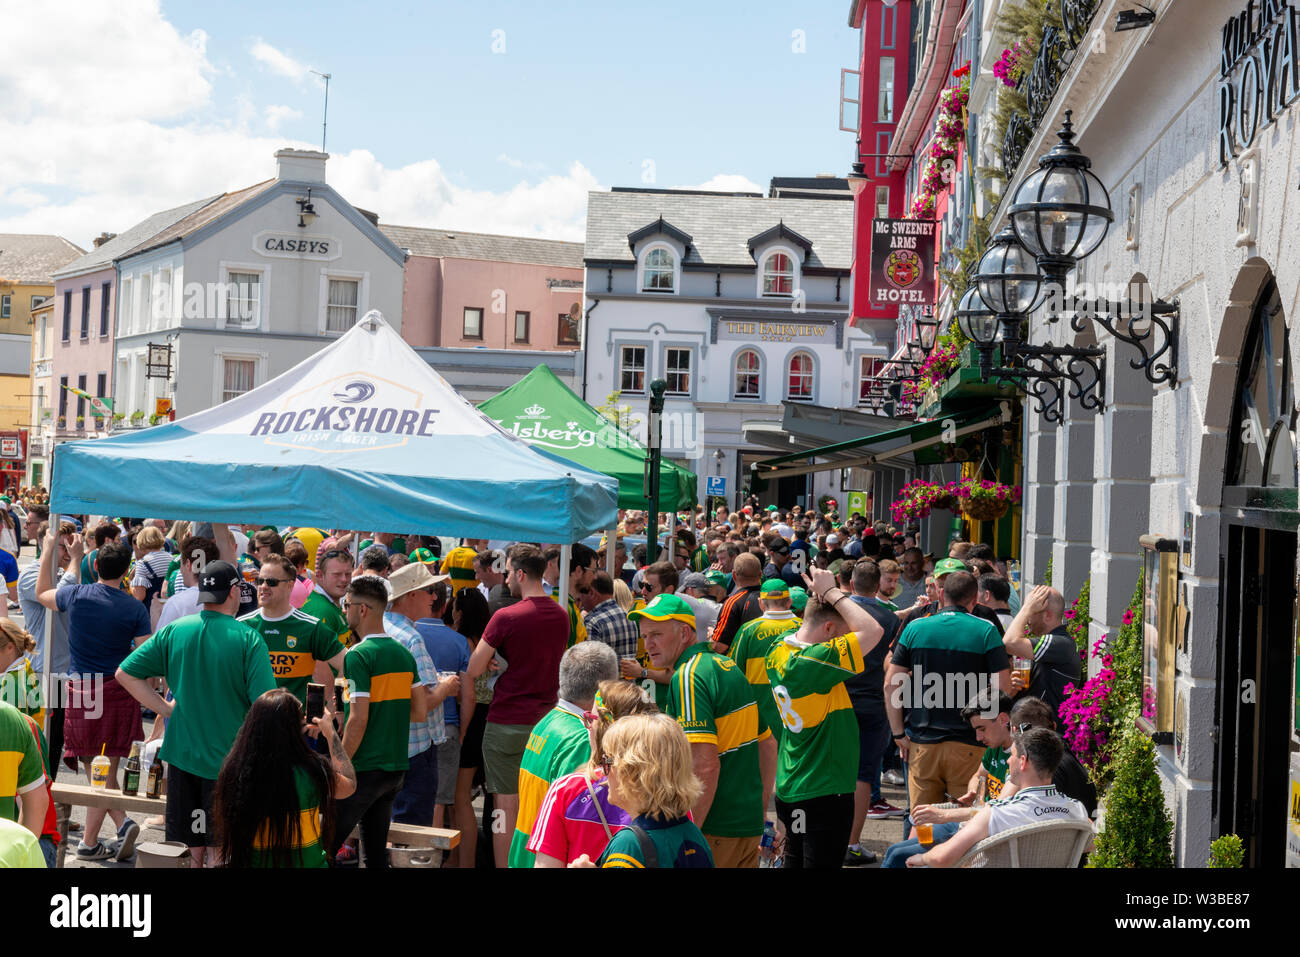 La ciudad de Killarney se llenó de aficionados al fútbol en un día de partido fuera del Killarney Royal Hotel, Killarney, Condado de Kerry, Irlanda Foto de stock